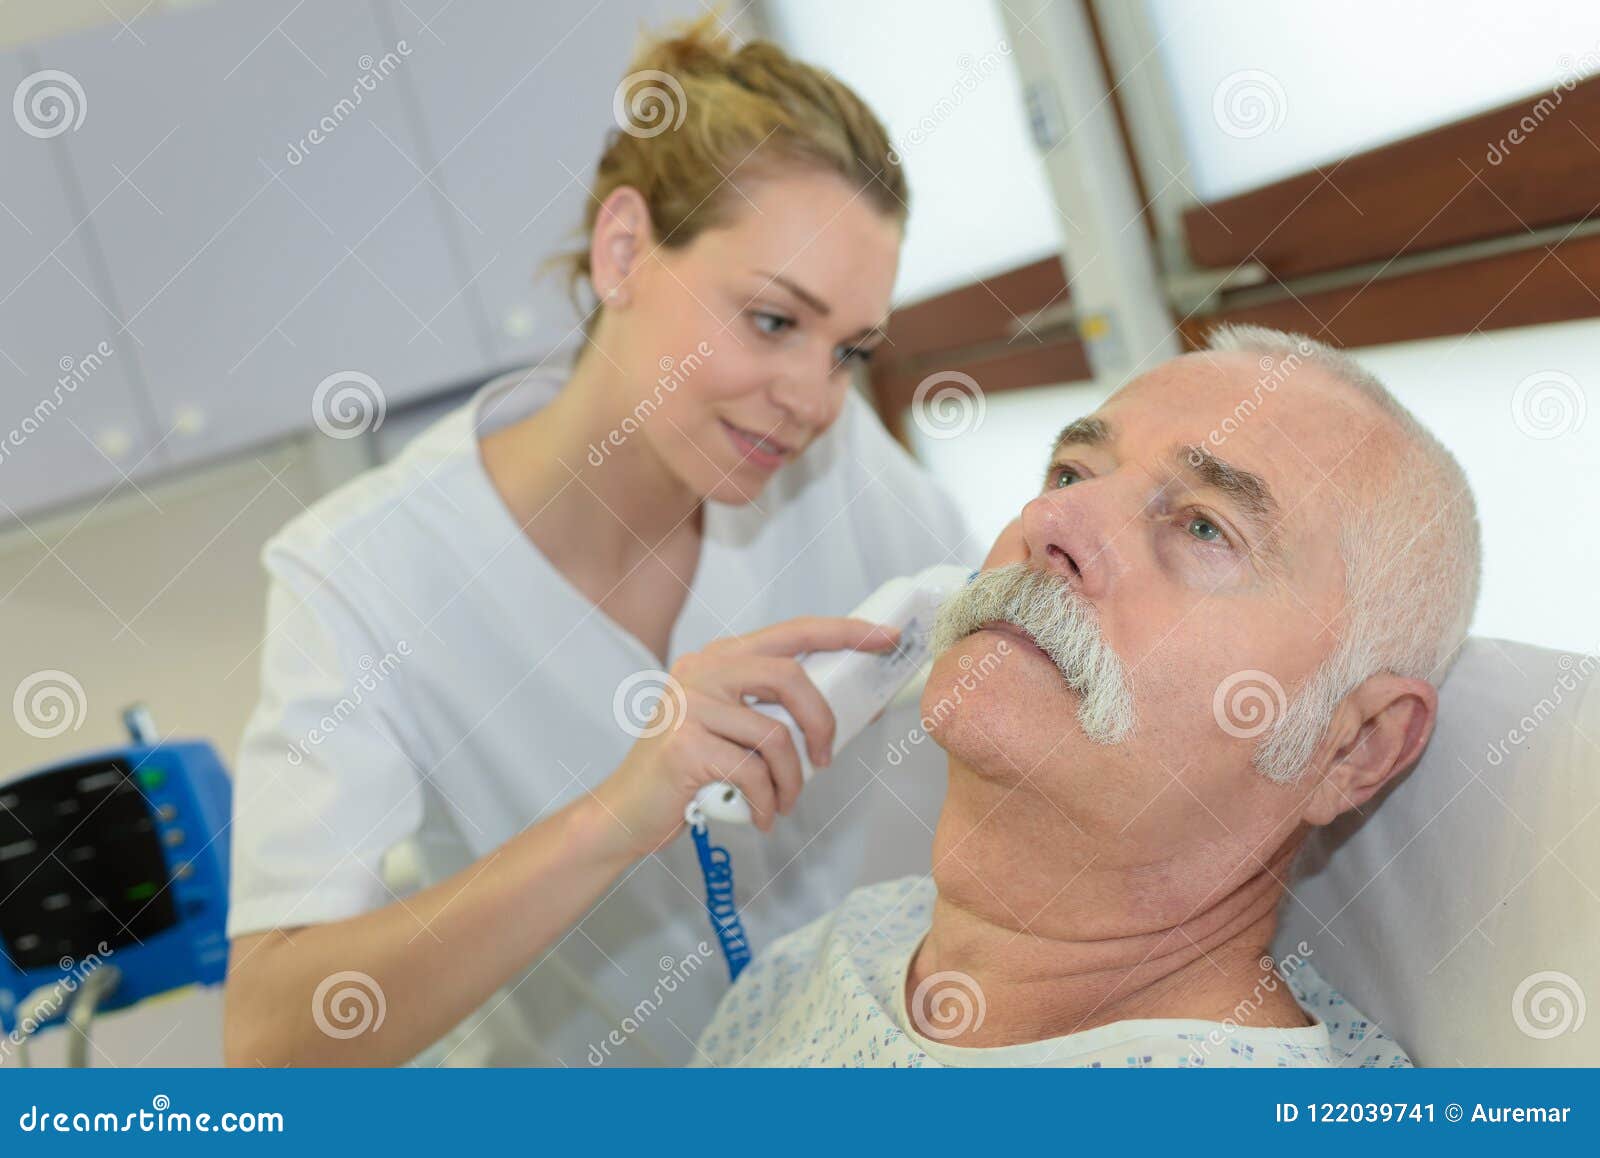 Побрить перед операцией. Умывание и бритье пациента. Бритьё и стрижка пациентов.